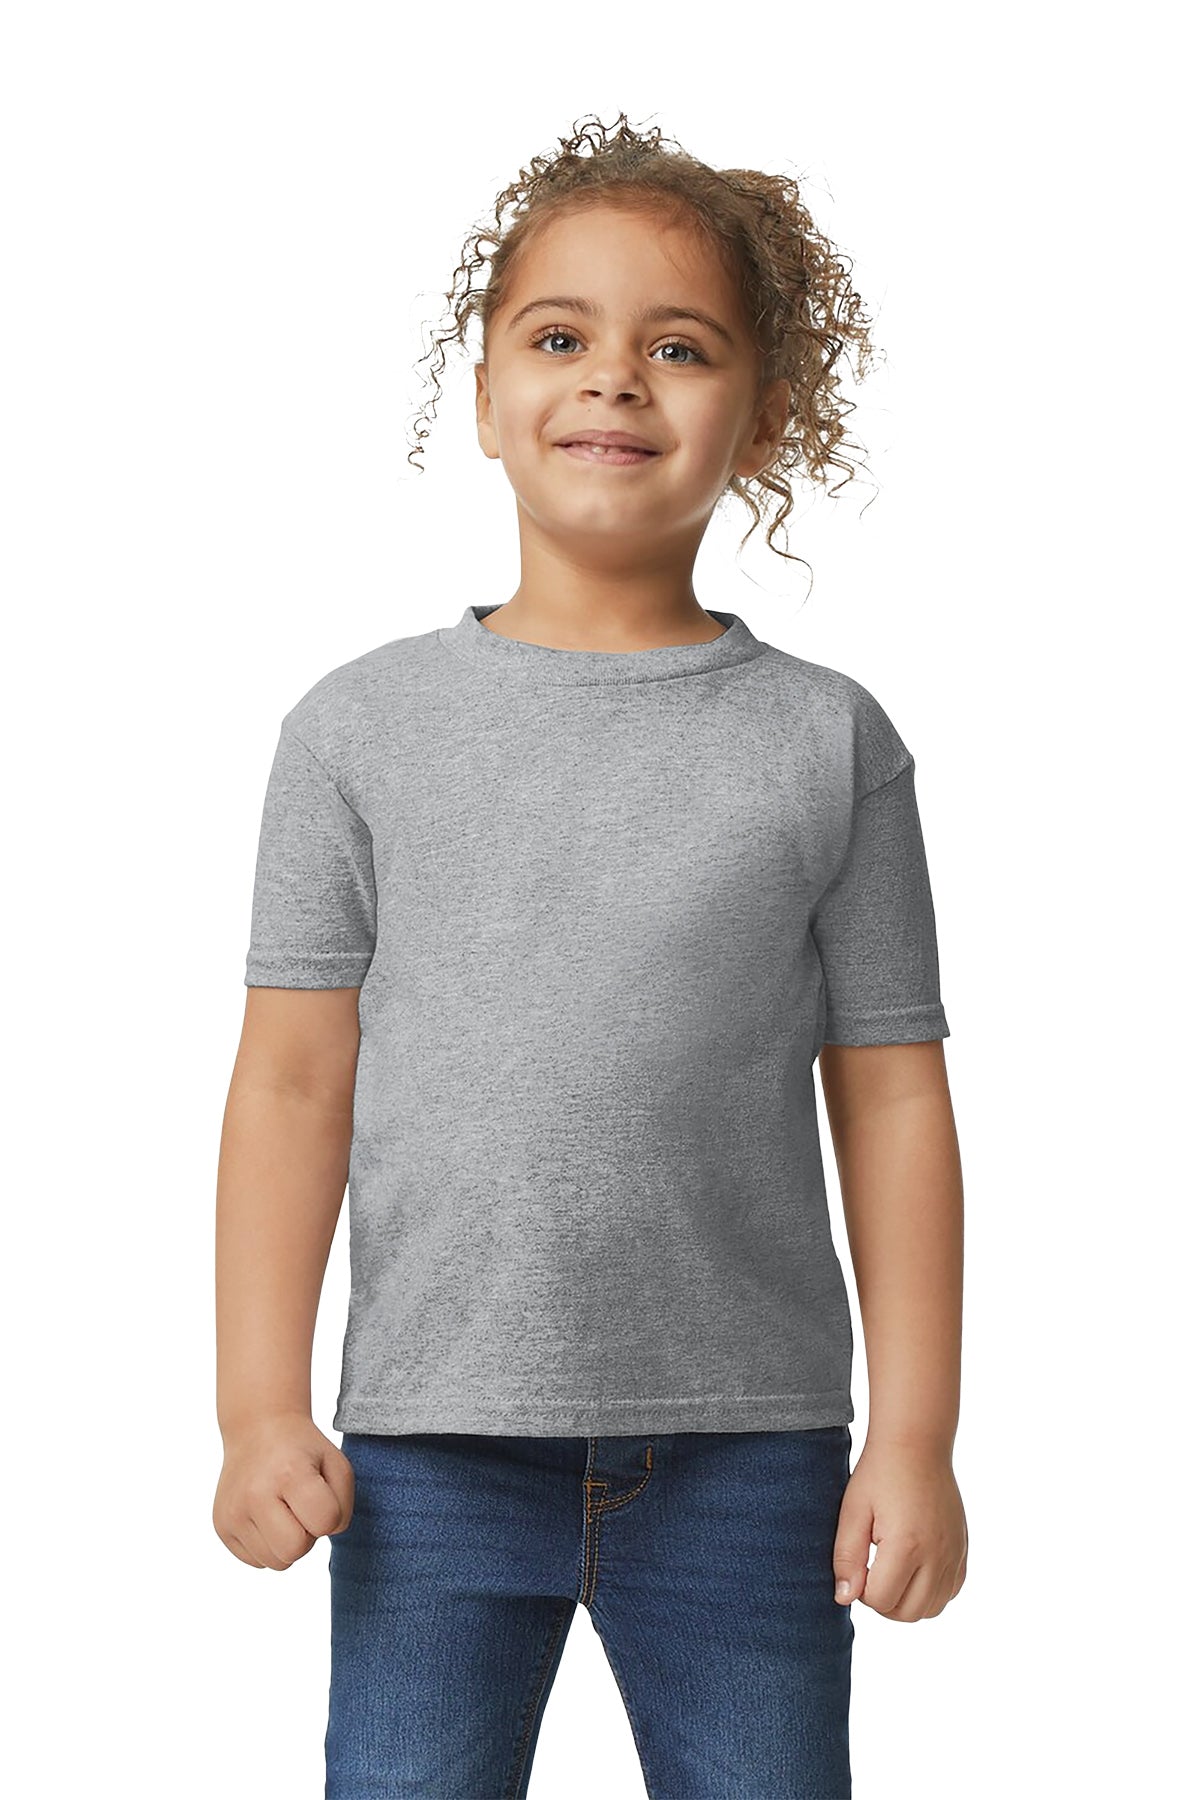 Gilden 5100P Toddler T-Shirt 3T / Sport Grey